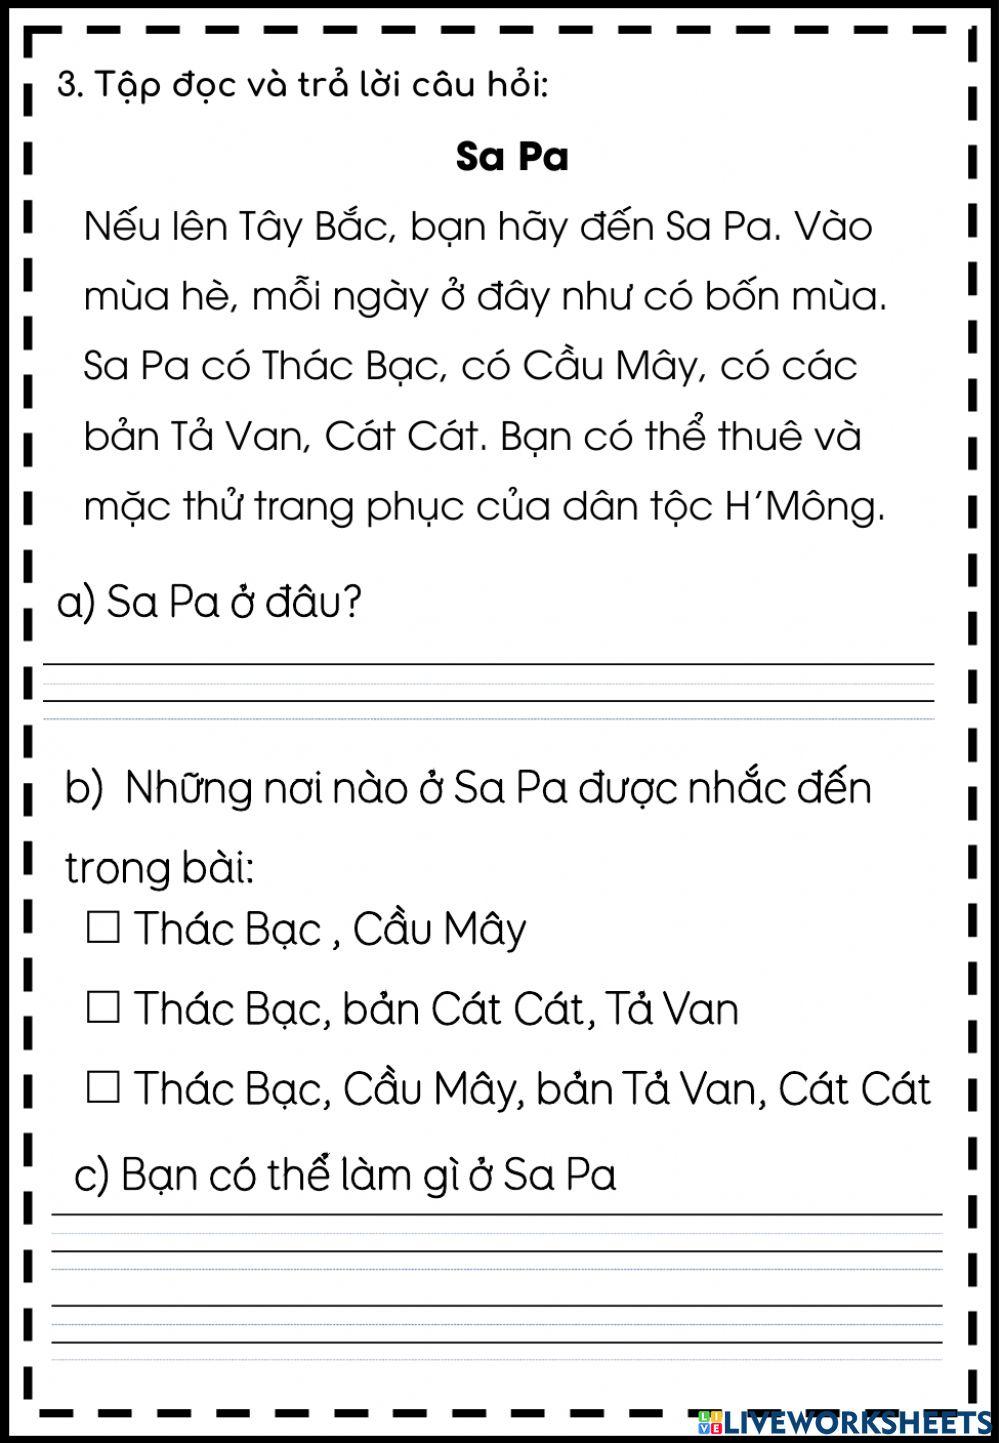 Vietnamese Week 31 - Ê